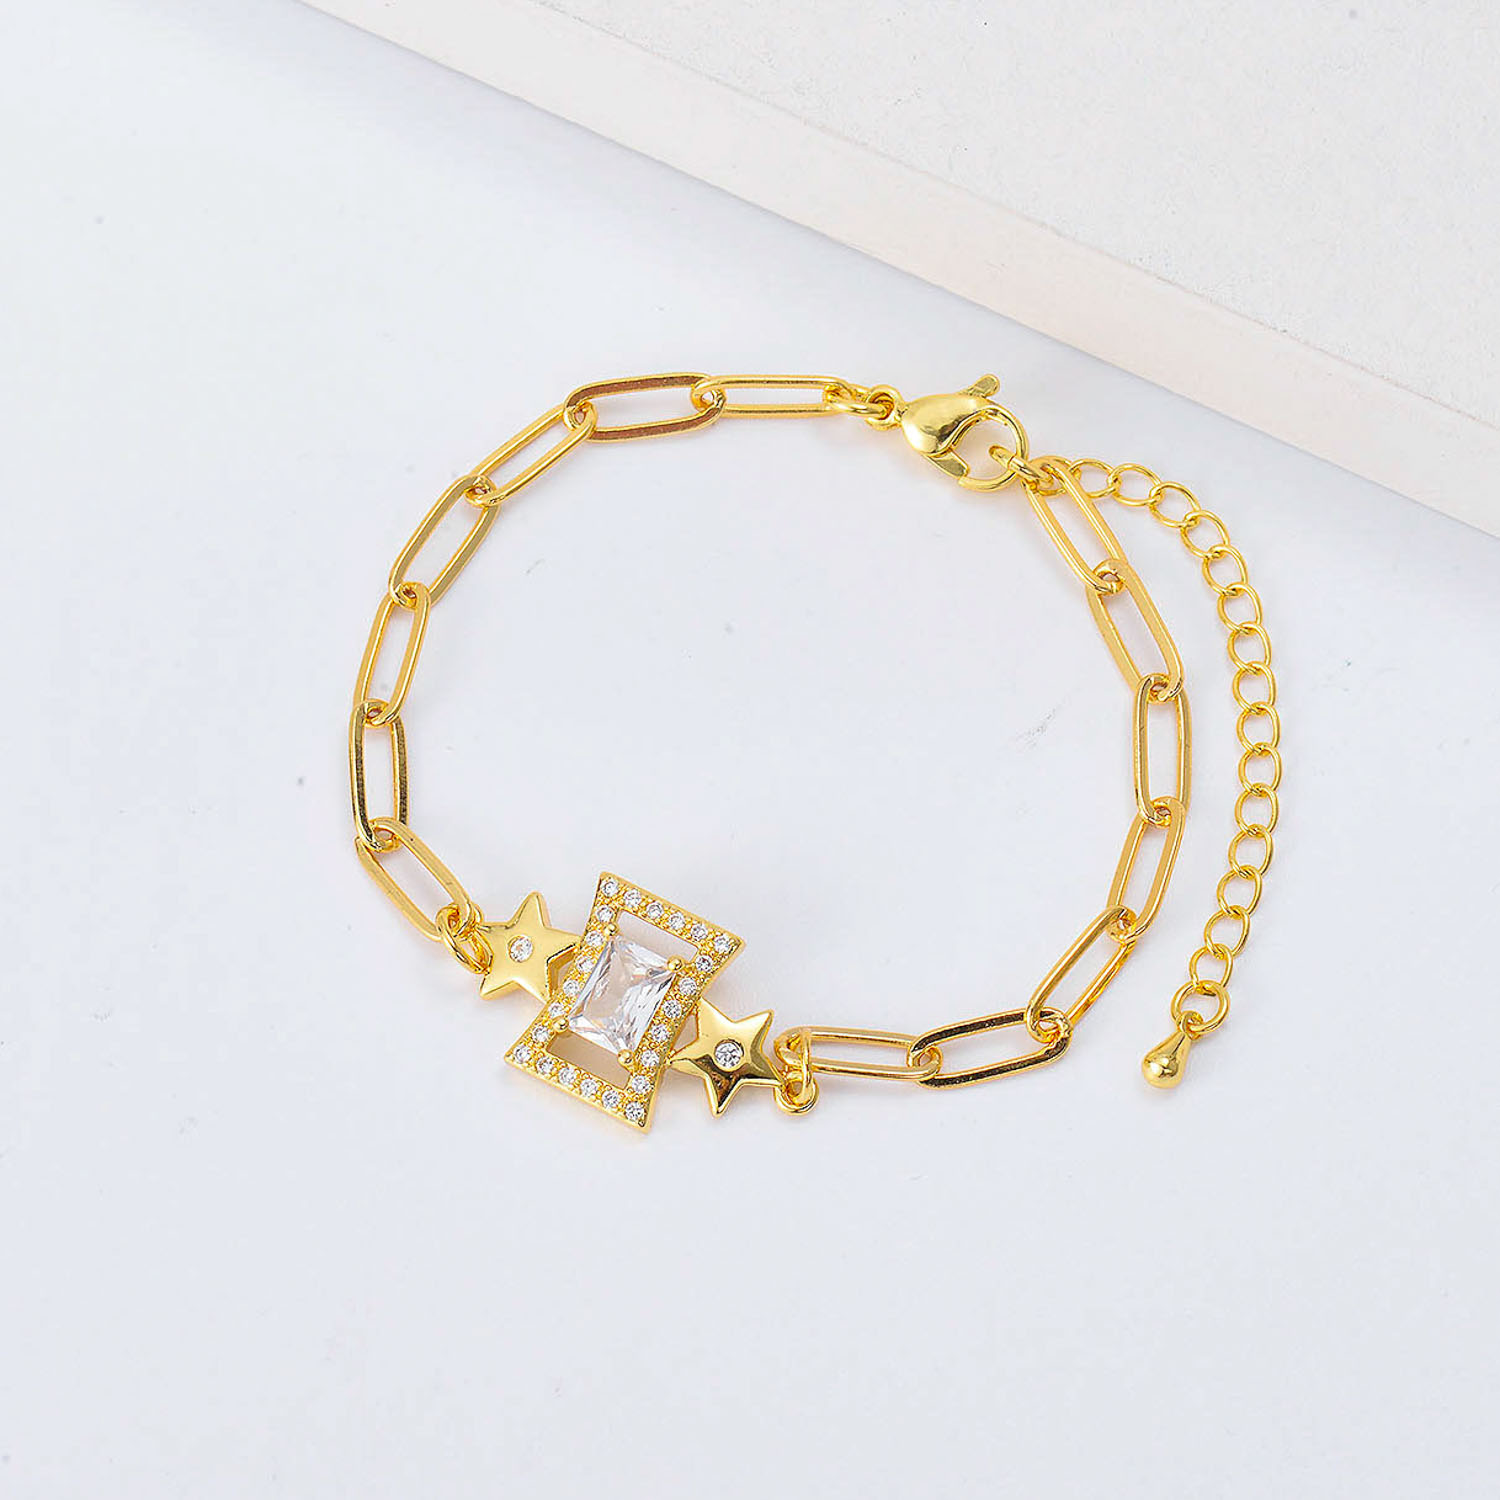 Pulseras de moda Oro Laminado hechas a mano por mayoreo aesthetic diseno